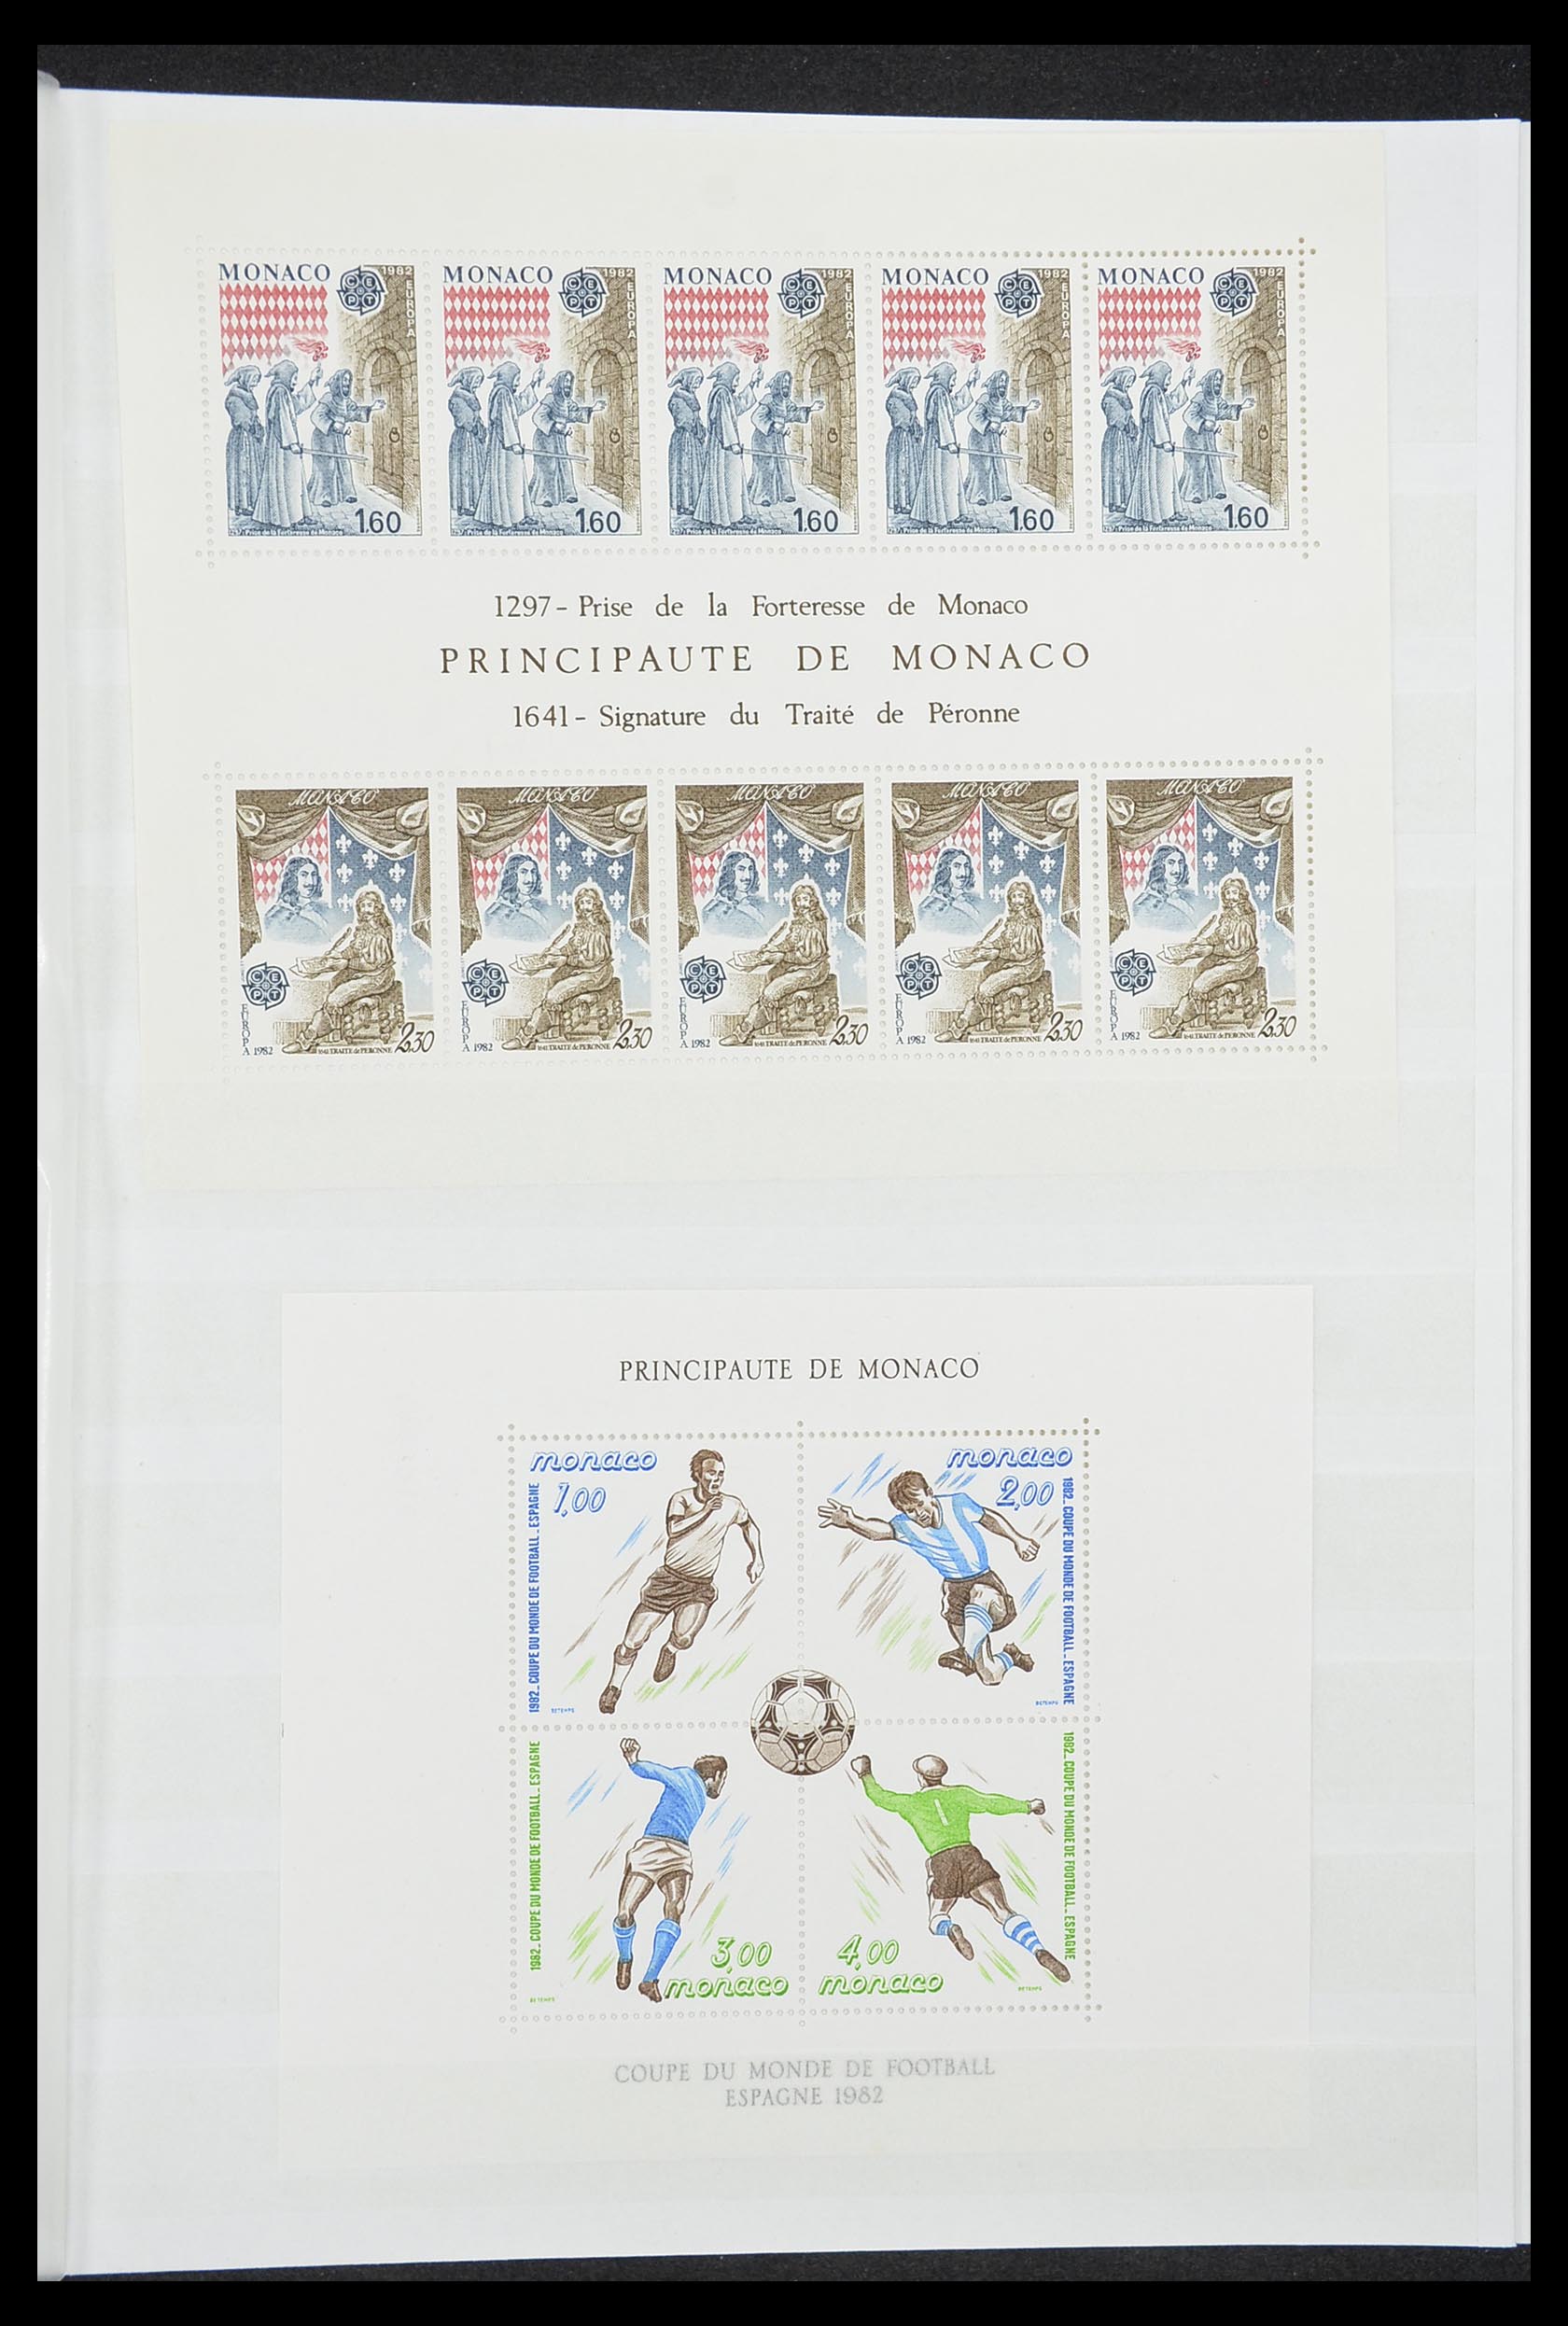 33833 003 - Stamp collection 33833 Monaco souvenir sheets 1979-2015.